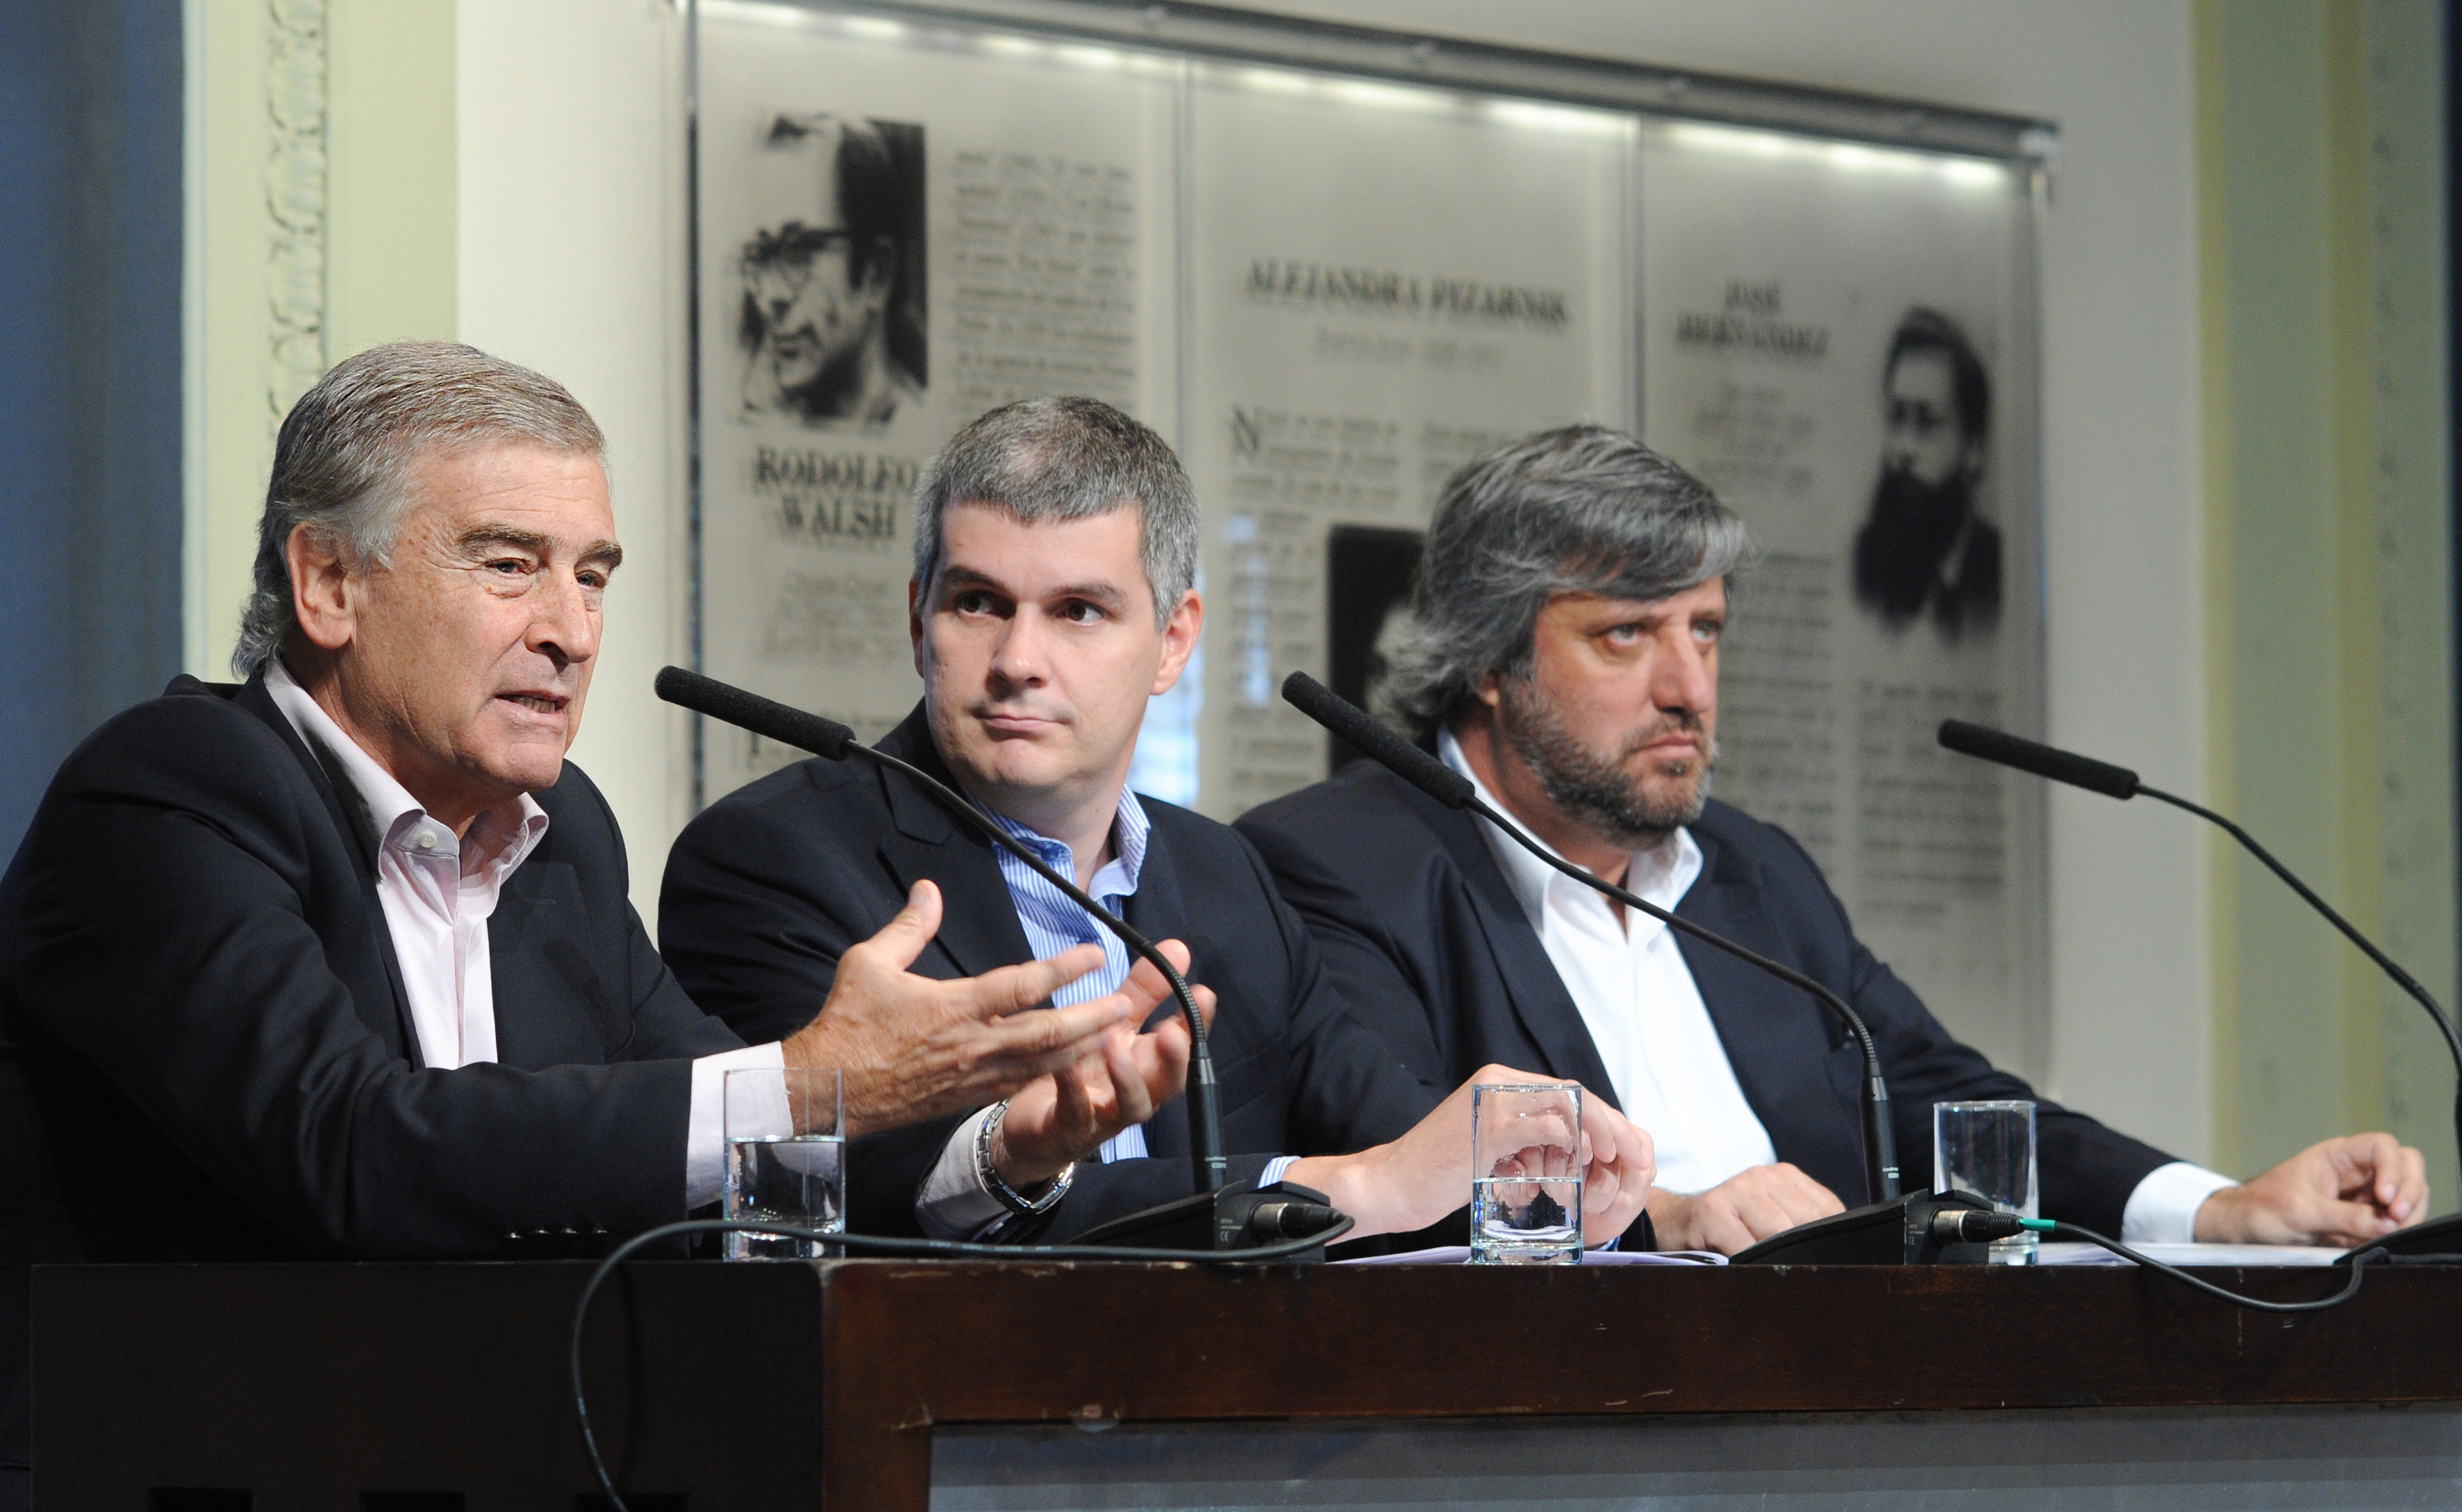 Marcos Peña, Oscar Aguad y Miguel de Godoy en Casa de Gobierno